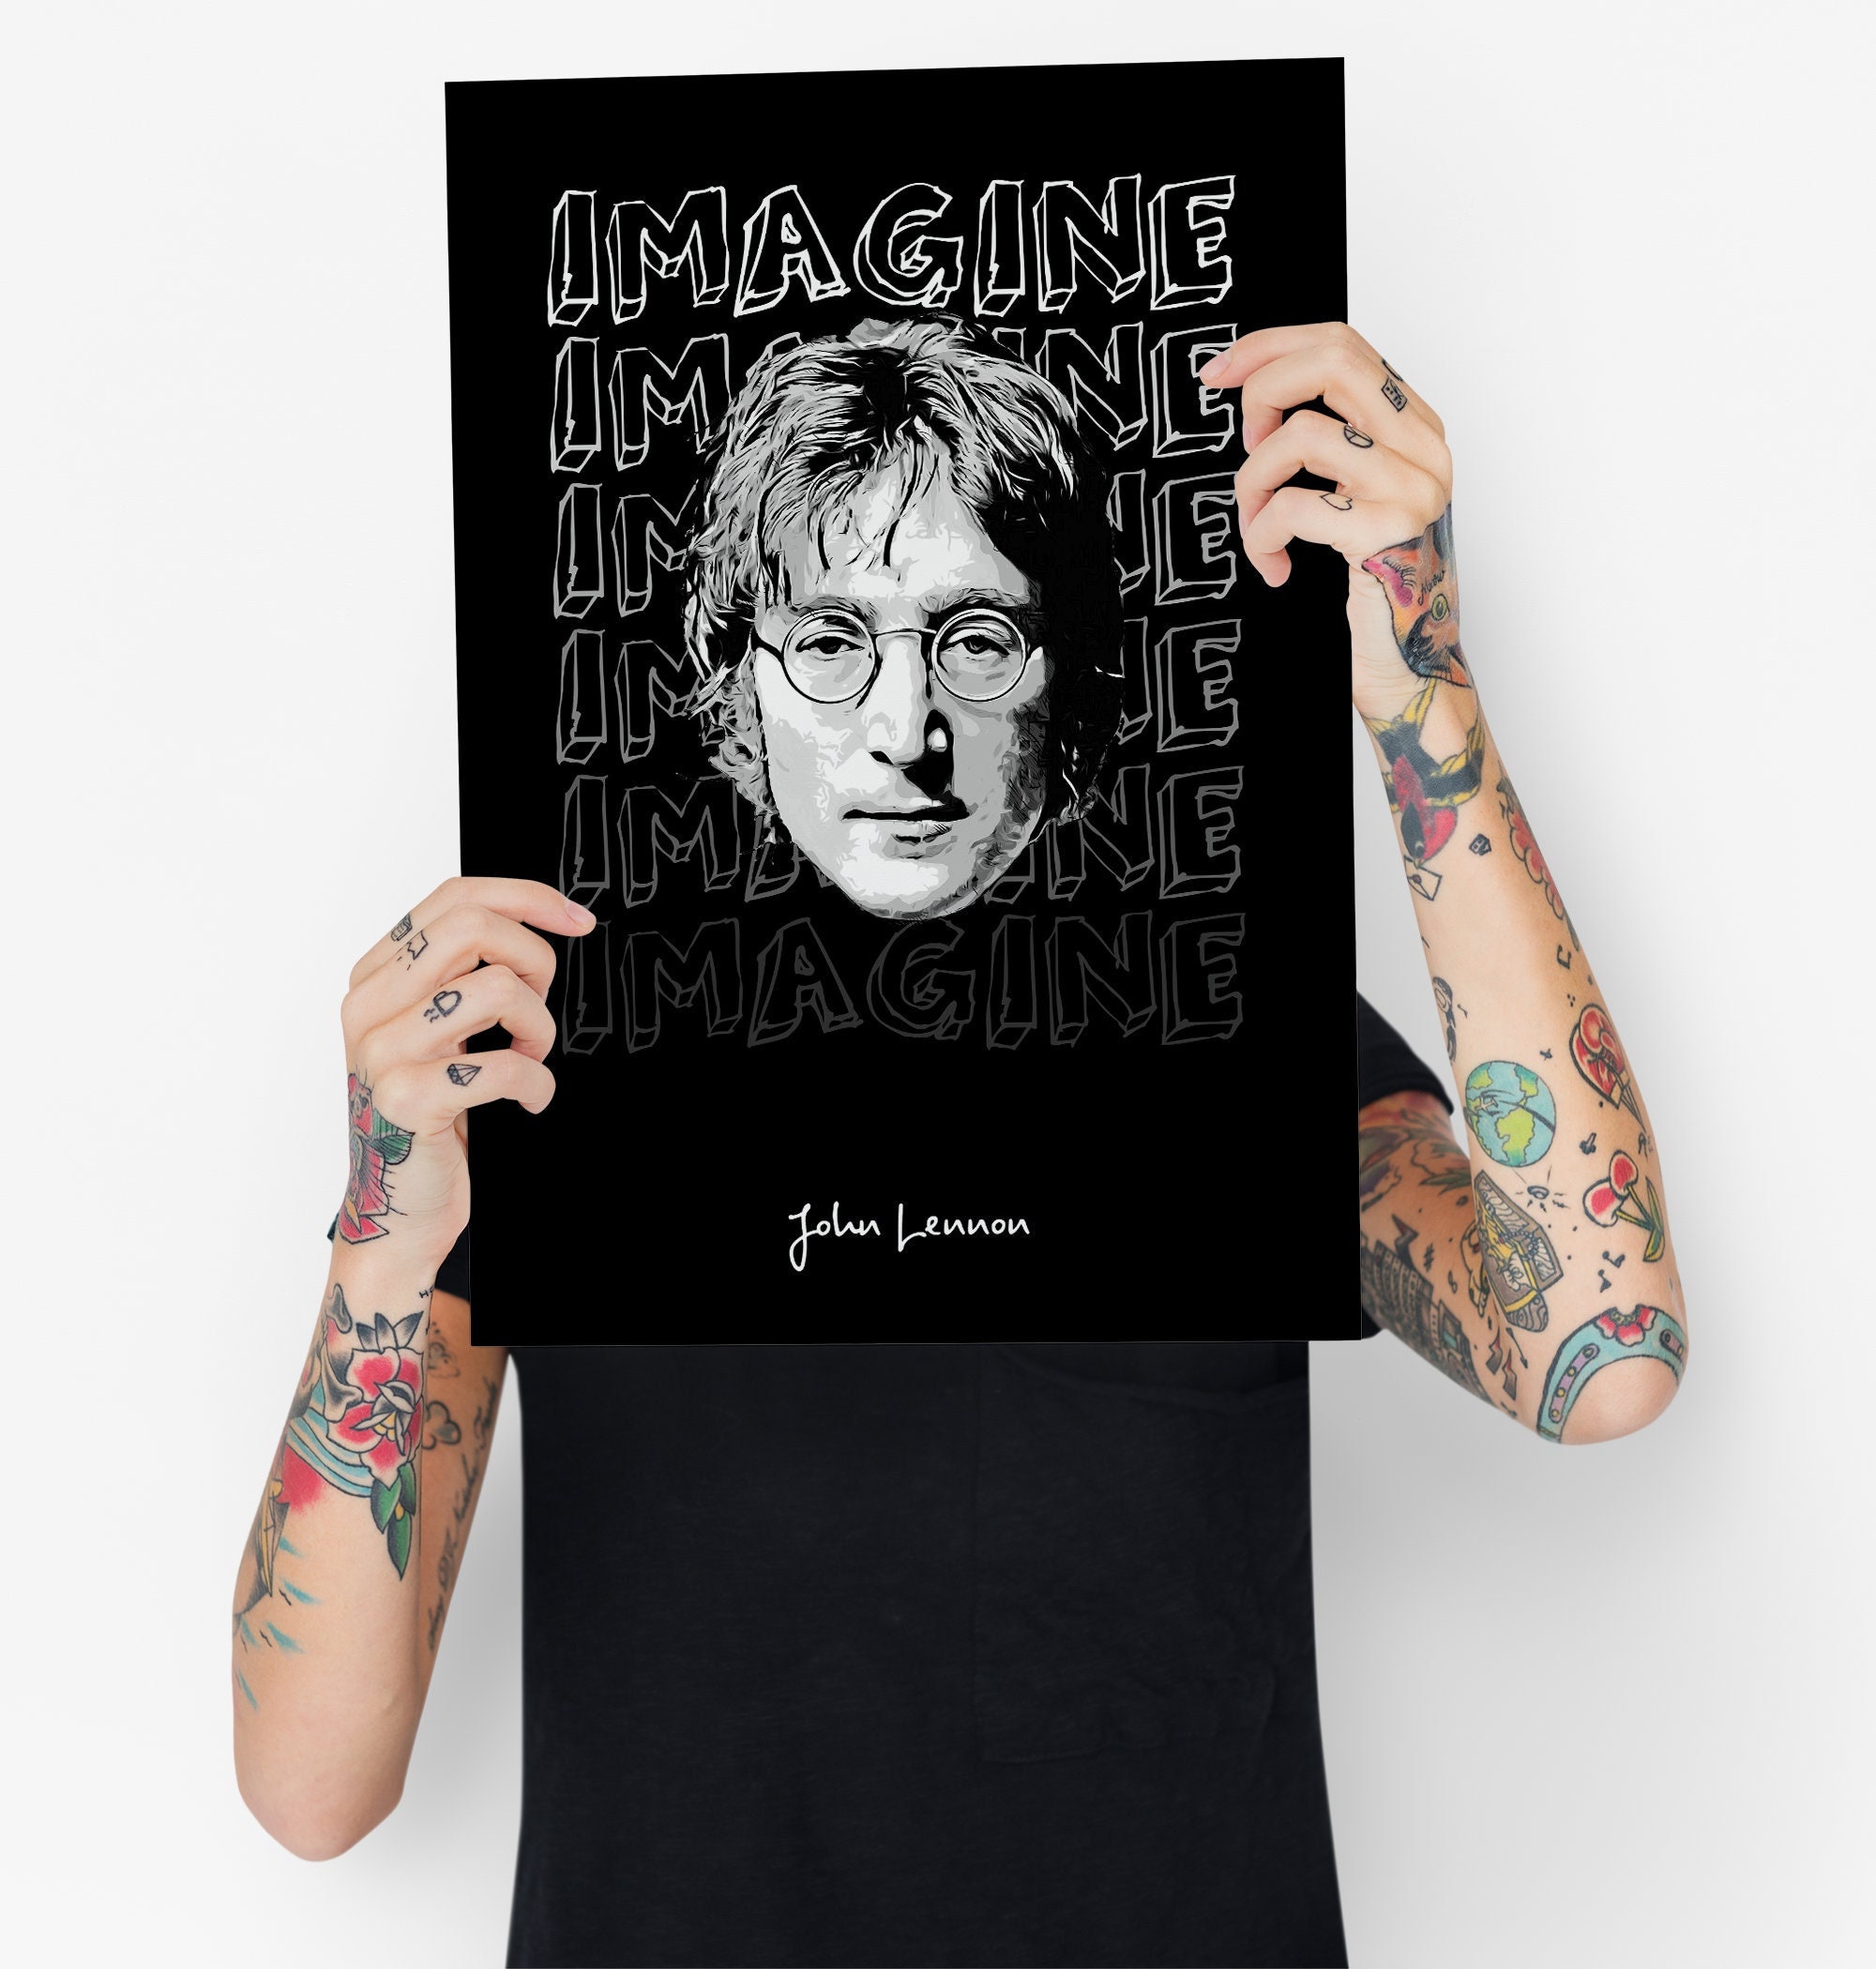 John Lennon Poster Imagine Lyrics Poster Music Wall - Etsy